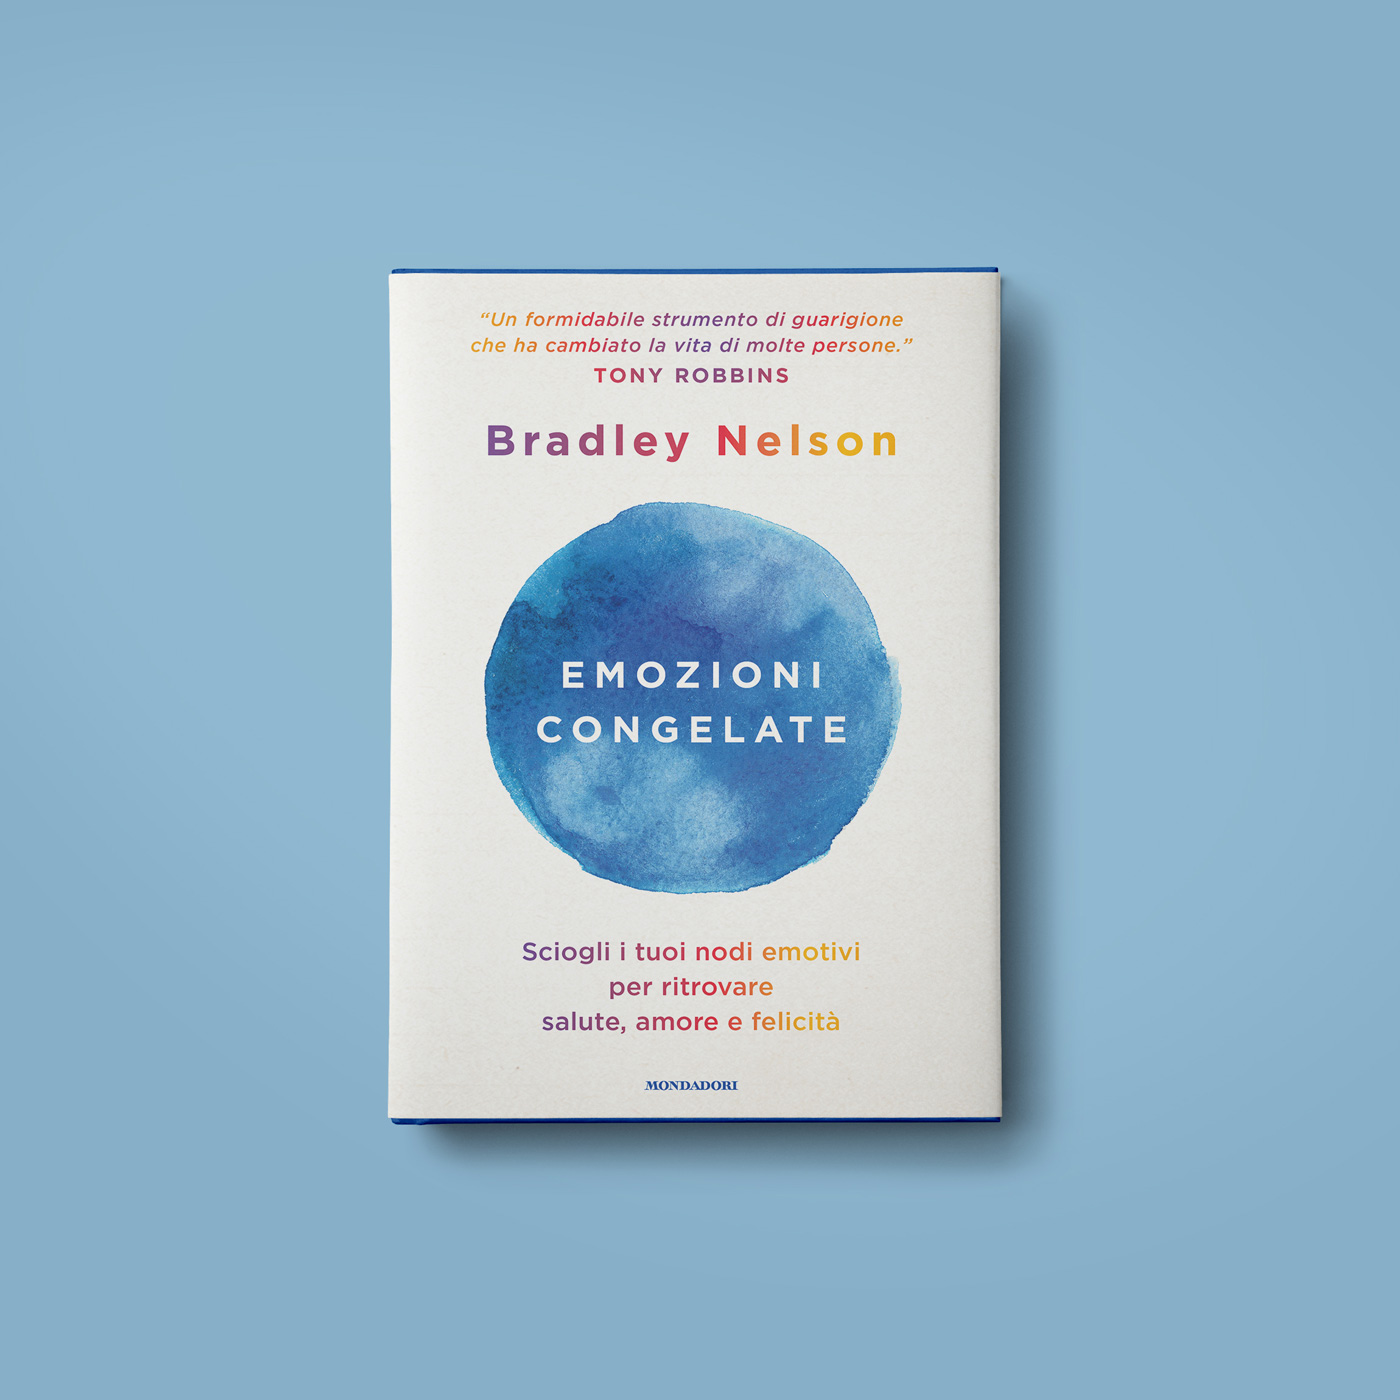 emozioni congelate book cover